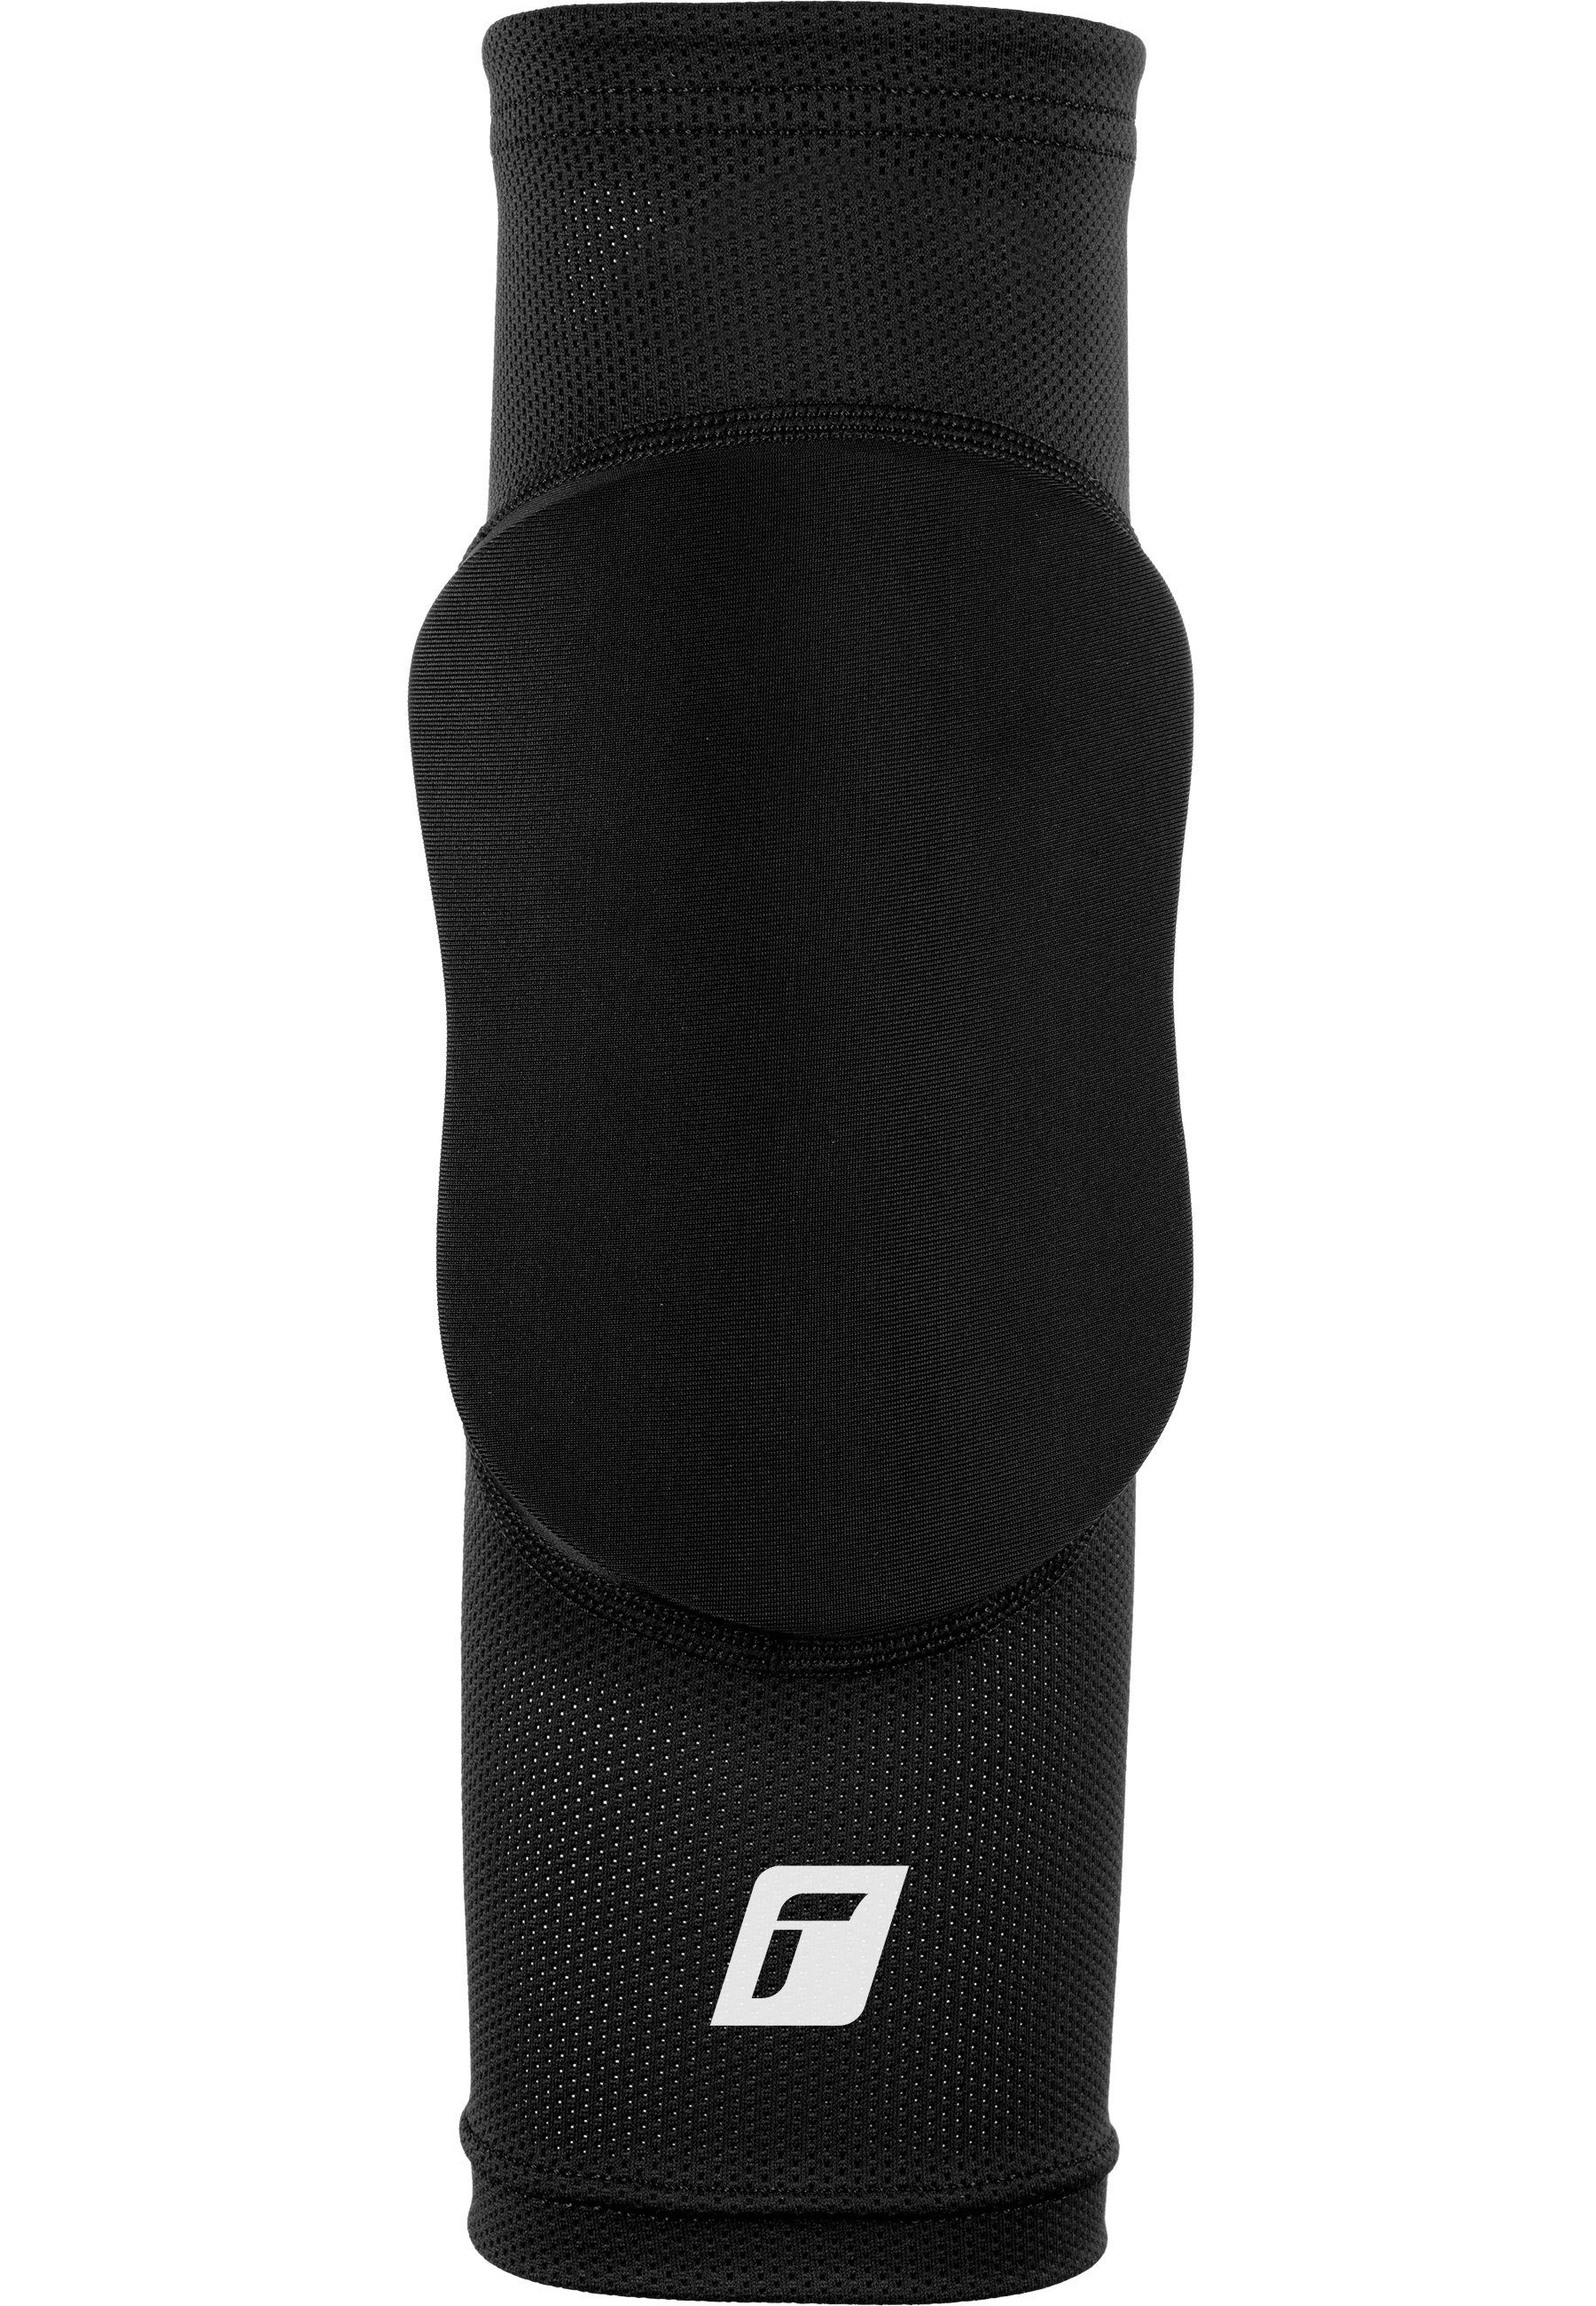 Reusch Knieprotektor Knee Protector Sleeve, optimale für Bewegungsfreiheit